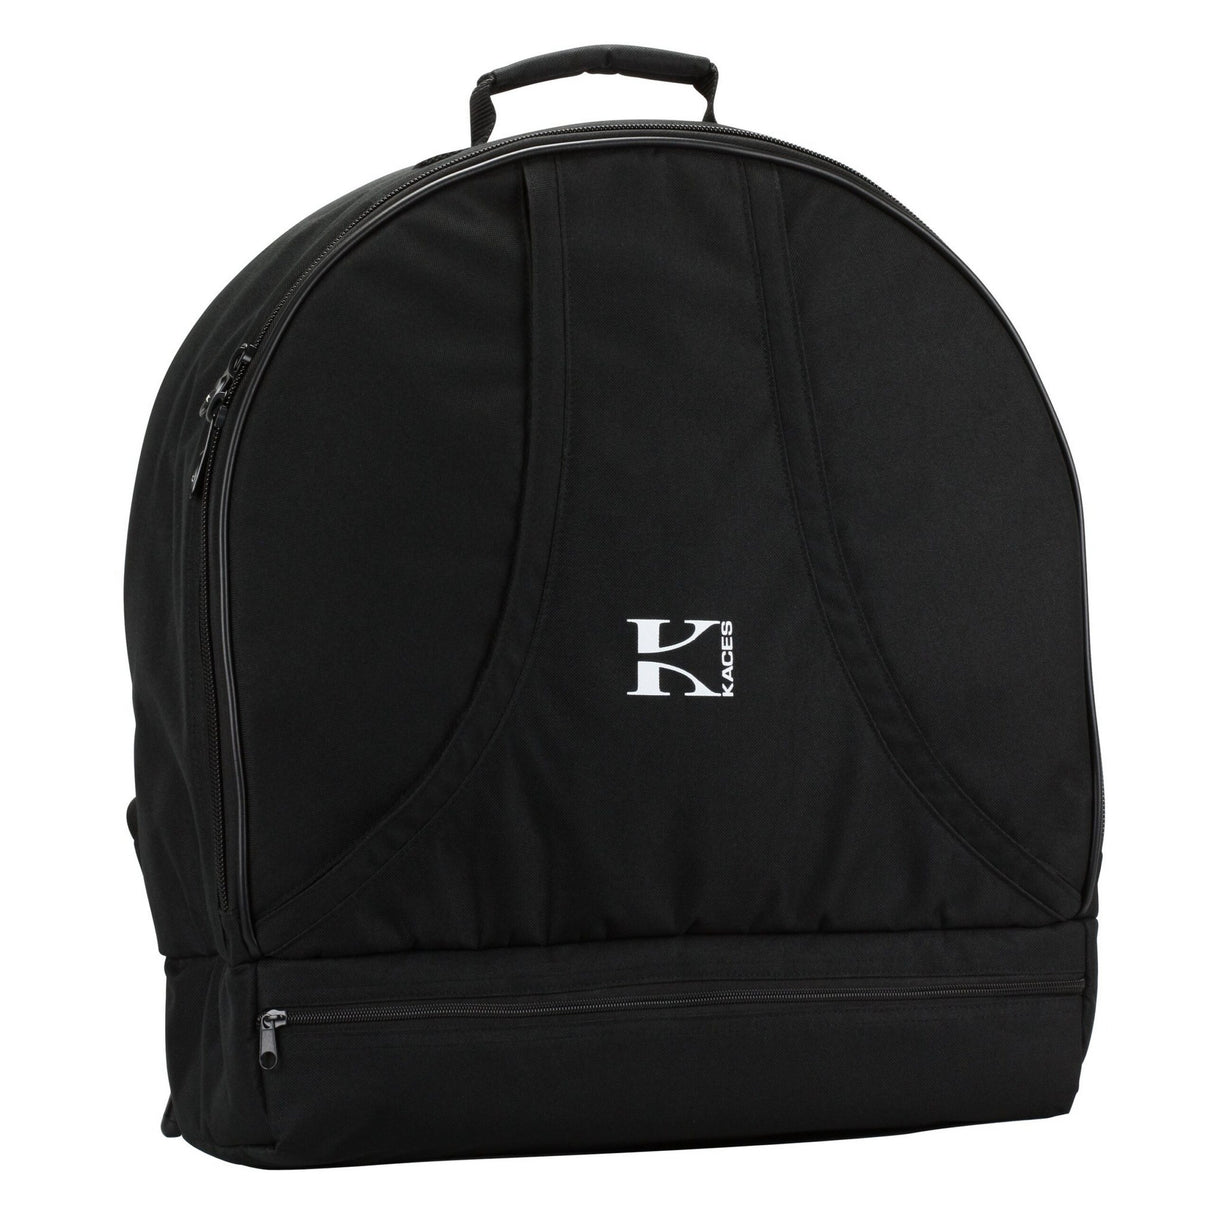 Kaces KDP-16 Snare Drum Kit Backpack